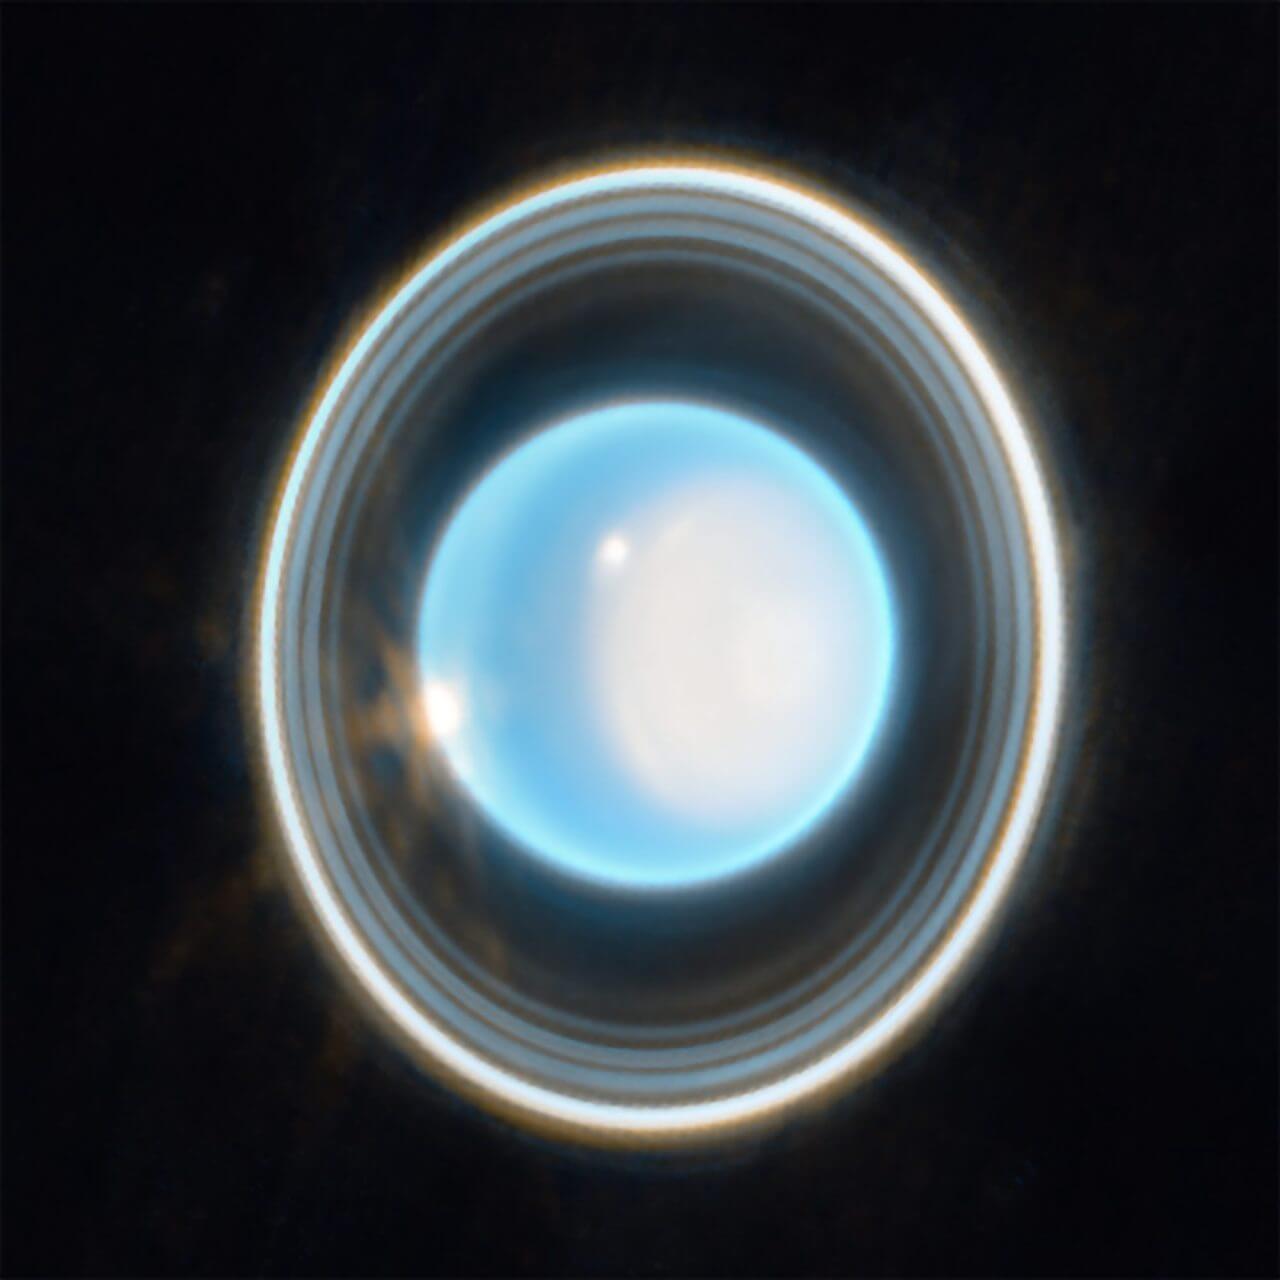 ジェイムズ・ウェッブ宇宙望遠鏡が捉えた天王星の姿